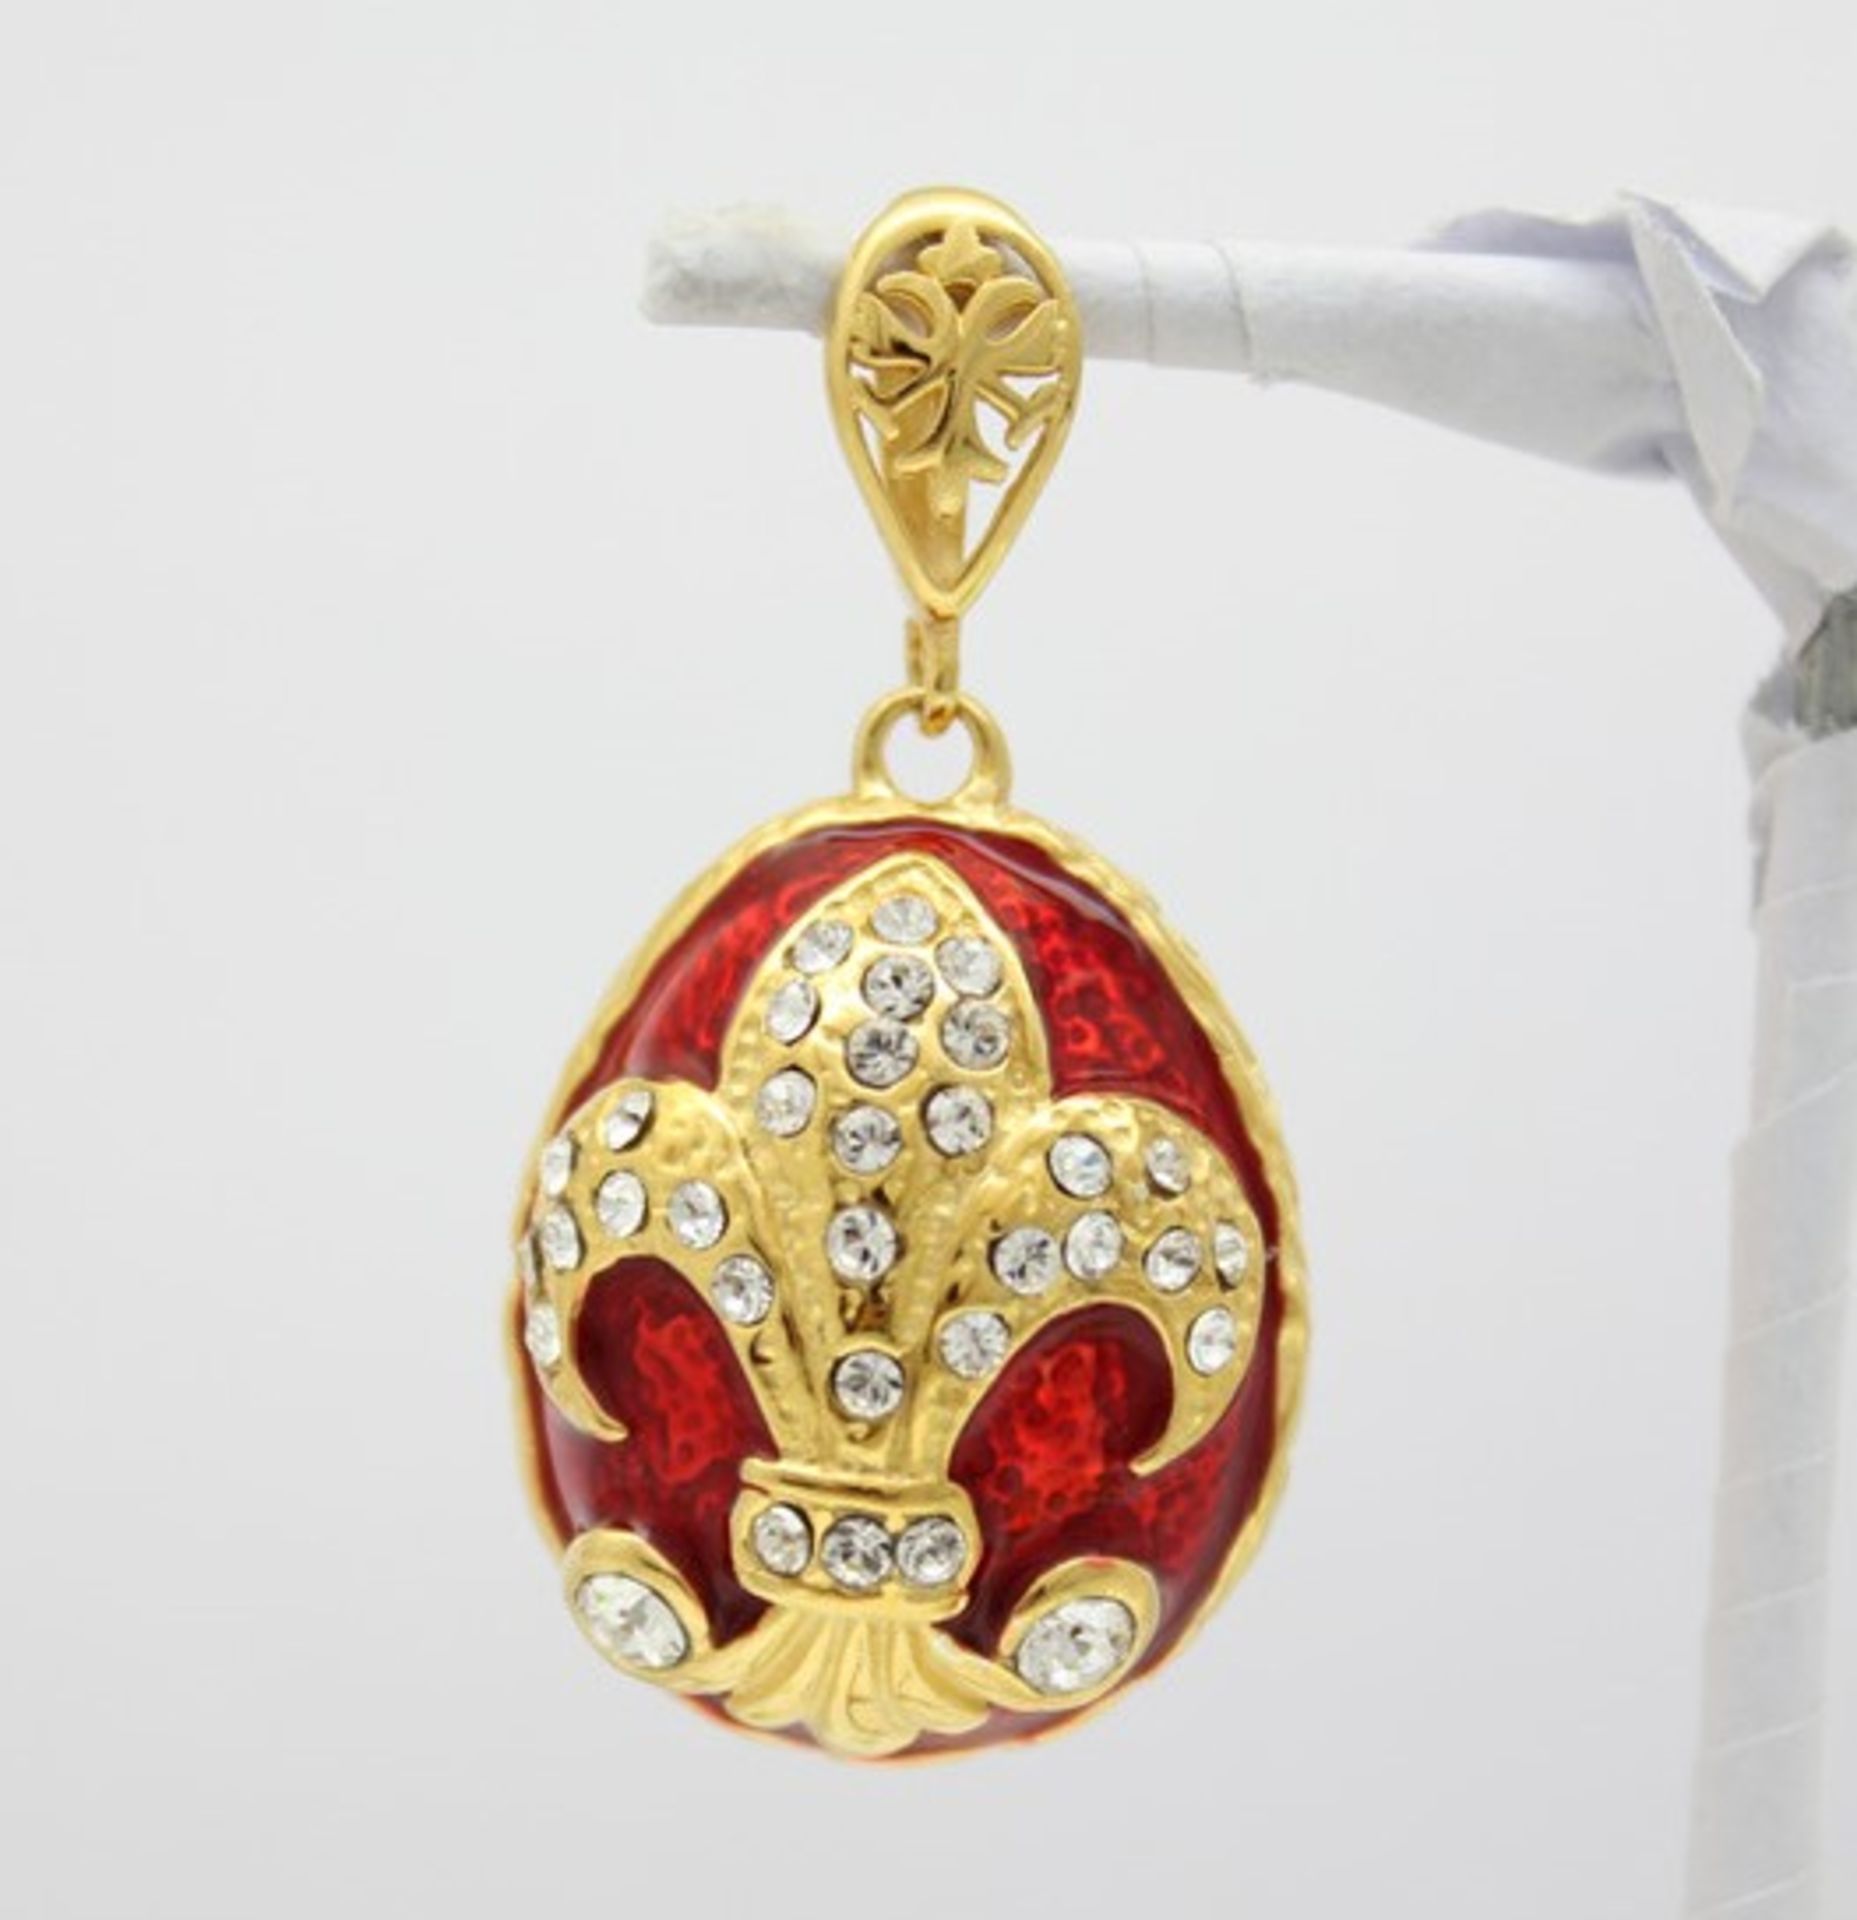 Rotes Ei mit französischer Lilie. Kettenanhänger in russischem Faberge-Stil. 925 Sterling Silber,